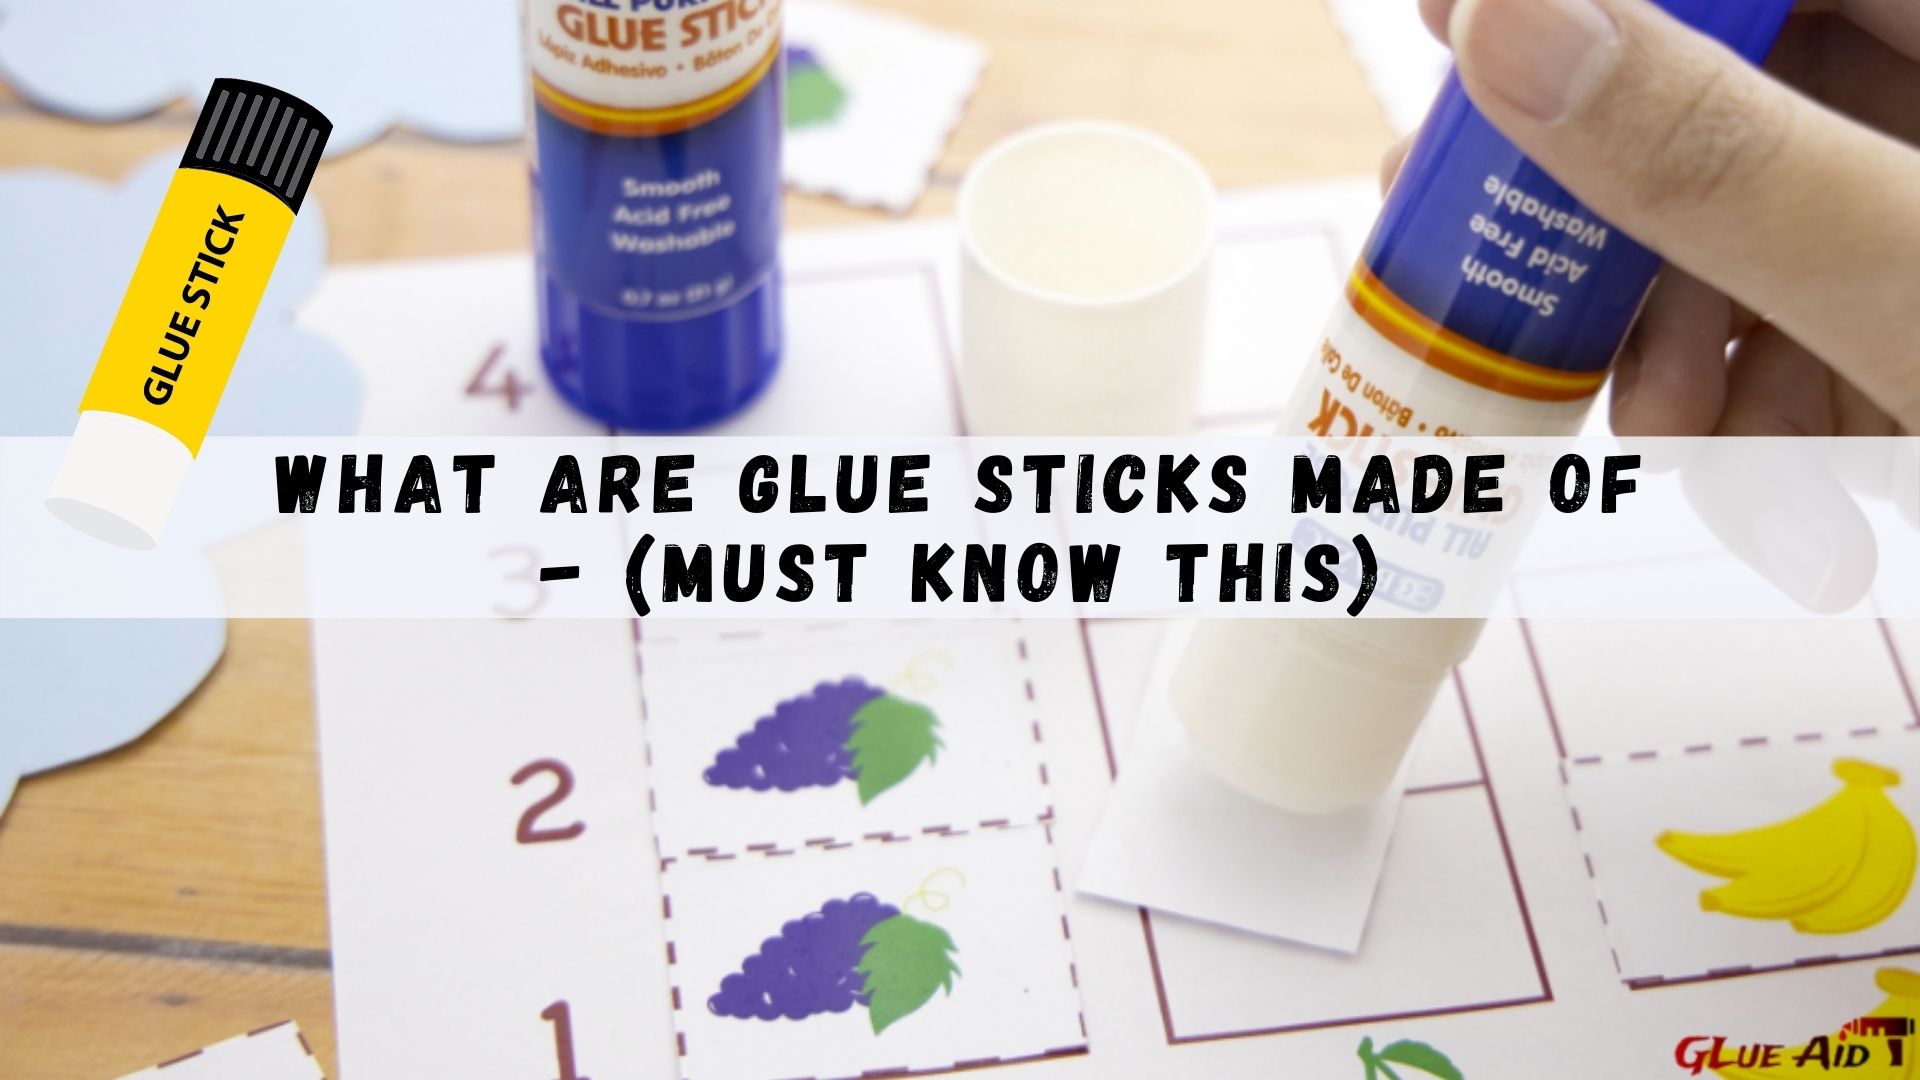 Where Are Glue Sticks Made